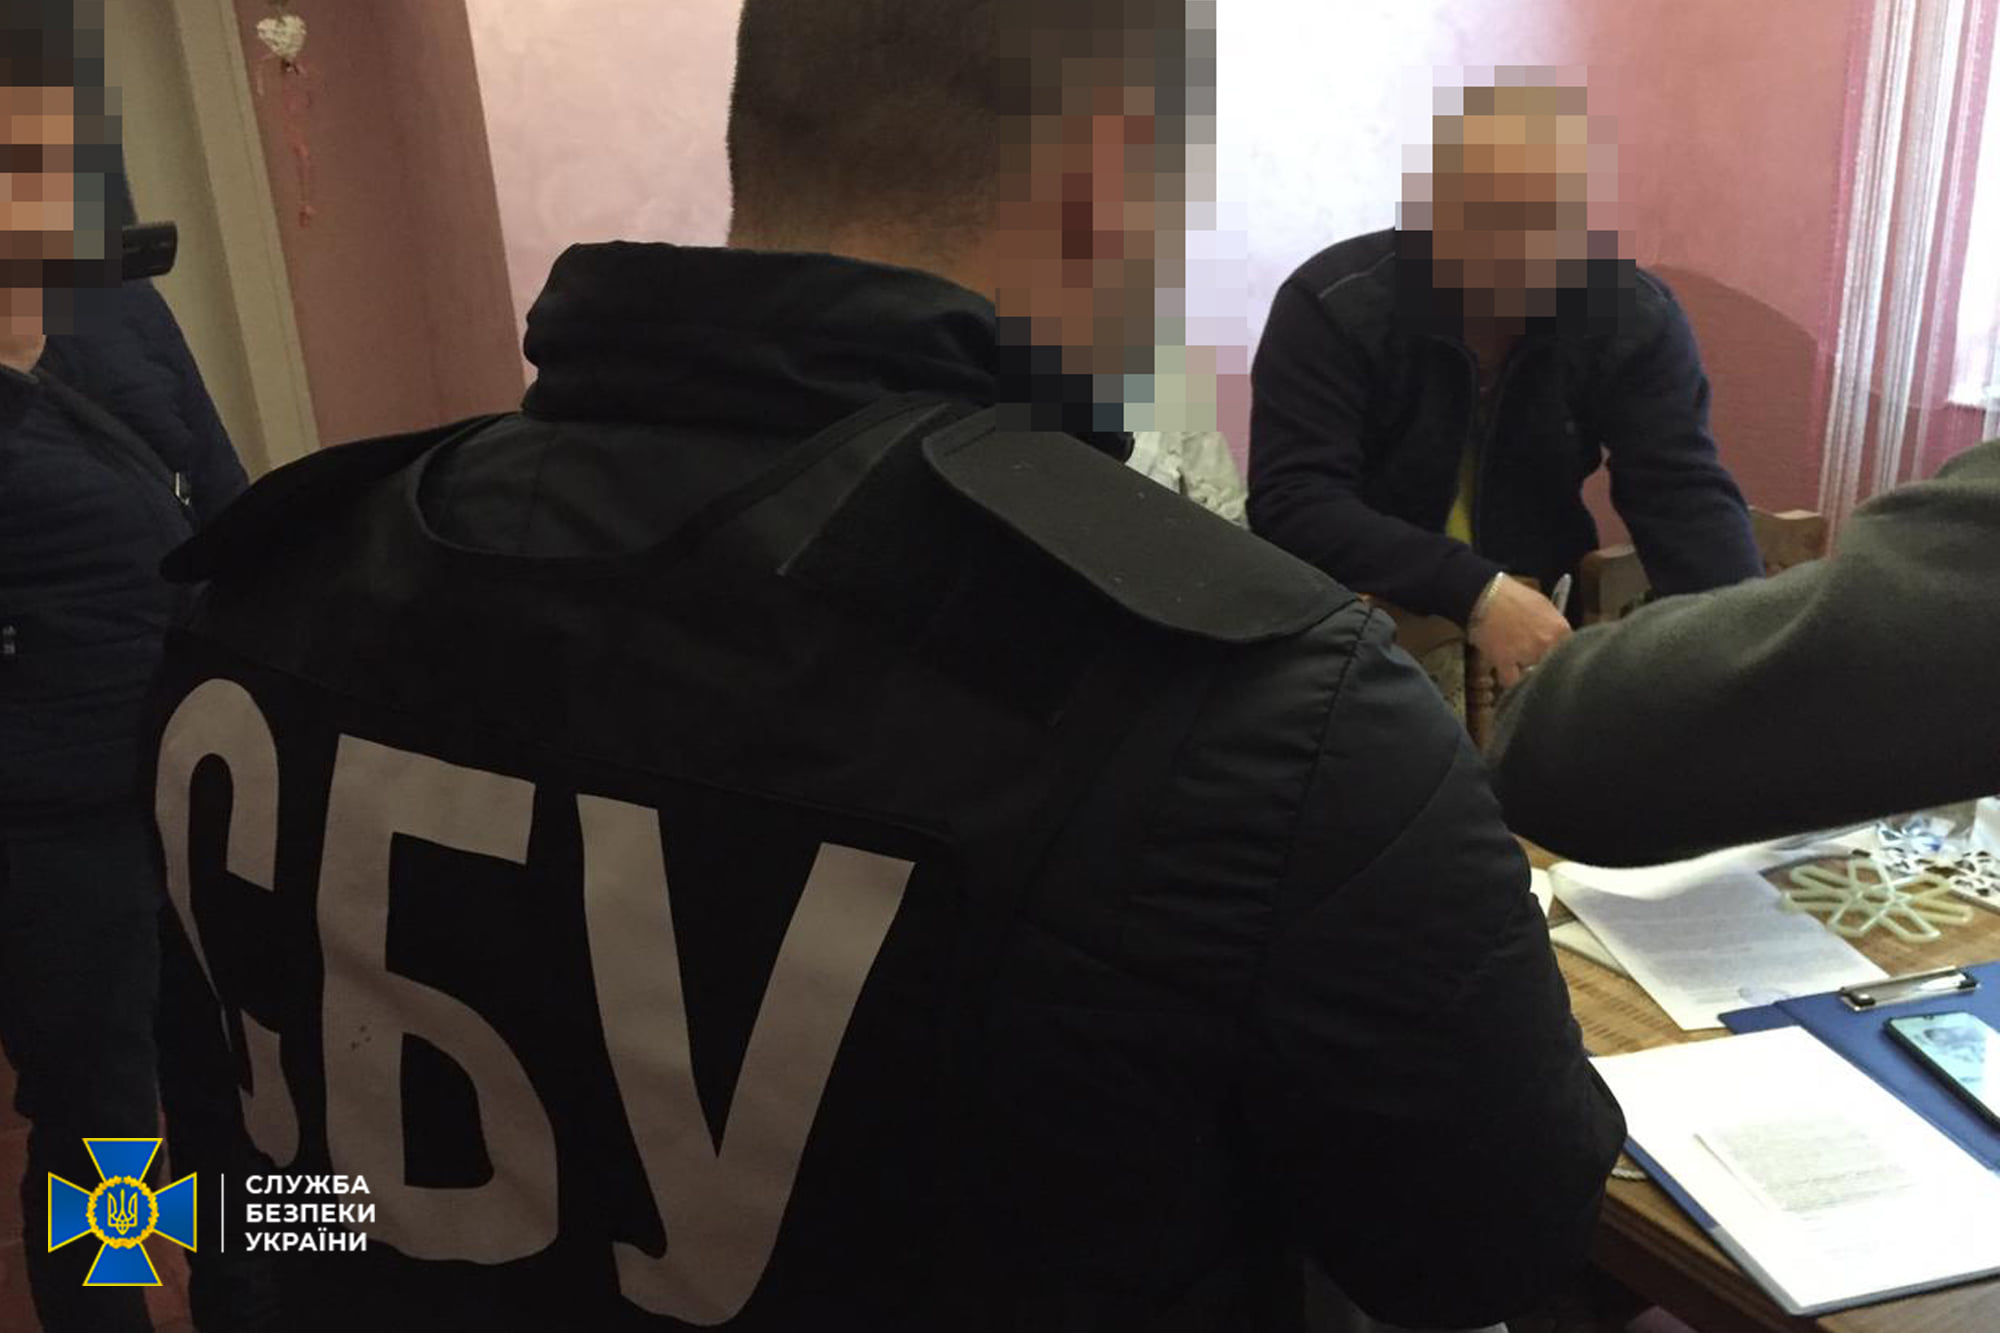 Жителю Закарпатья грозит пять лет тюрьмы за призывы в соцсетях отделить регион от Украины